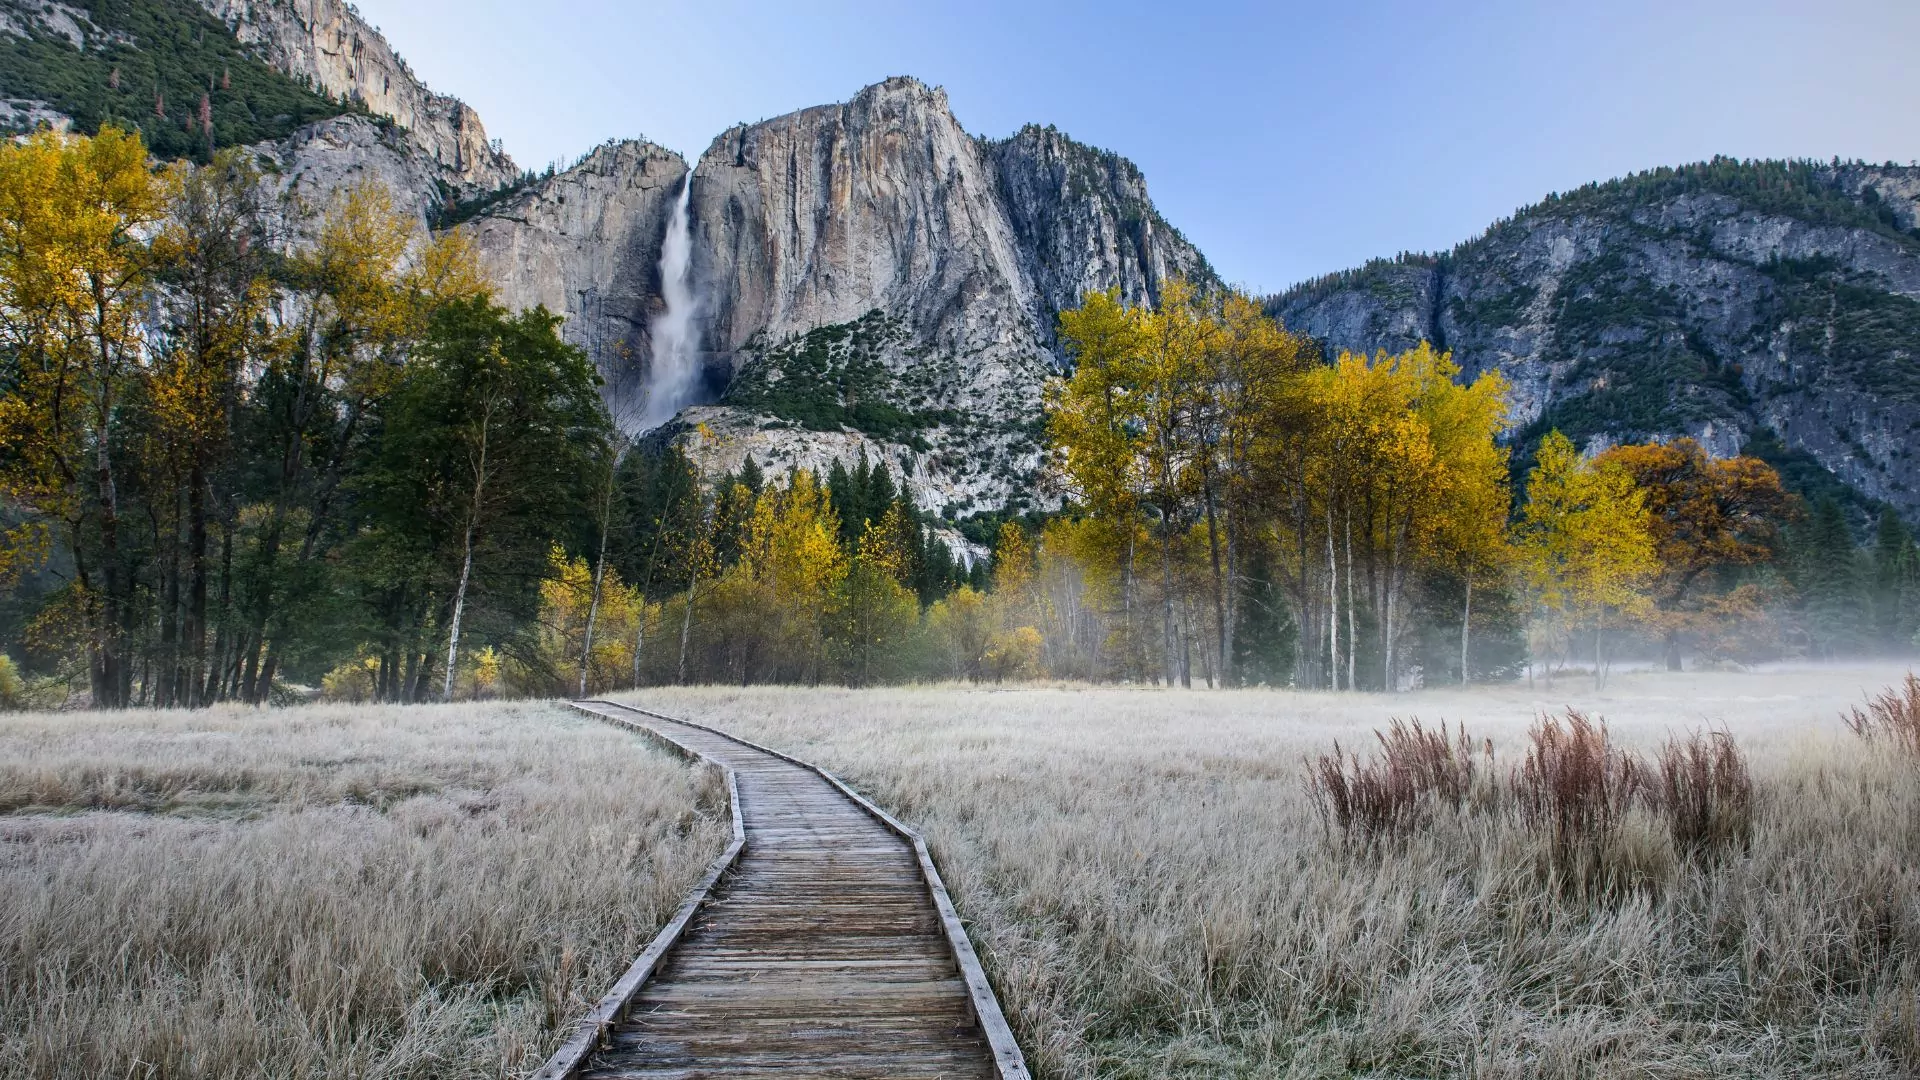 Yosemite meadow boardwalk in the morning